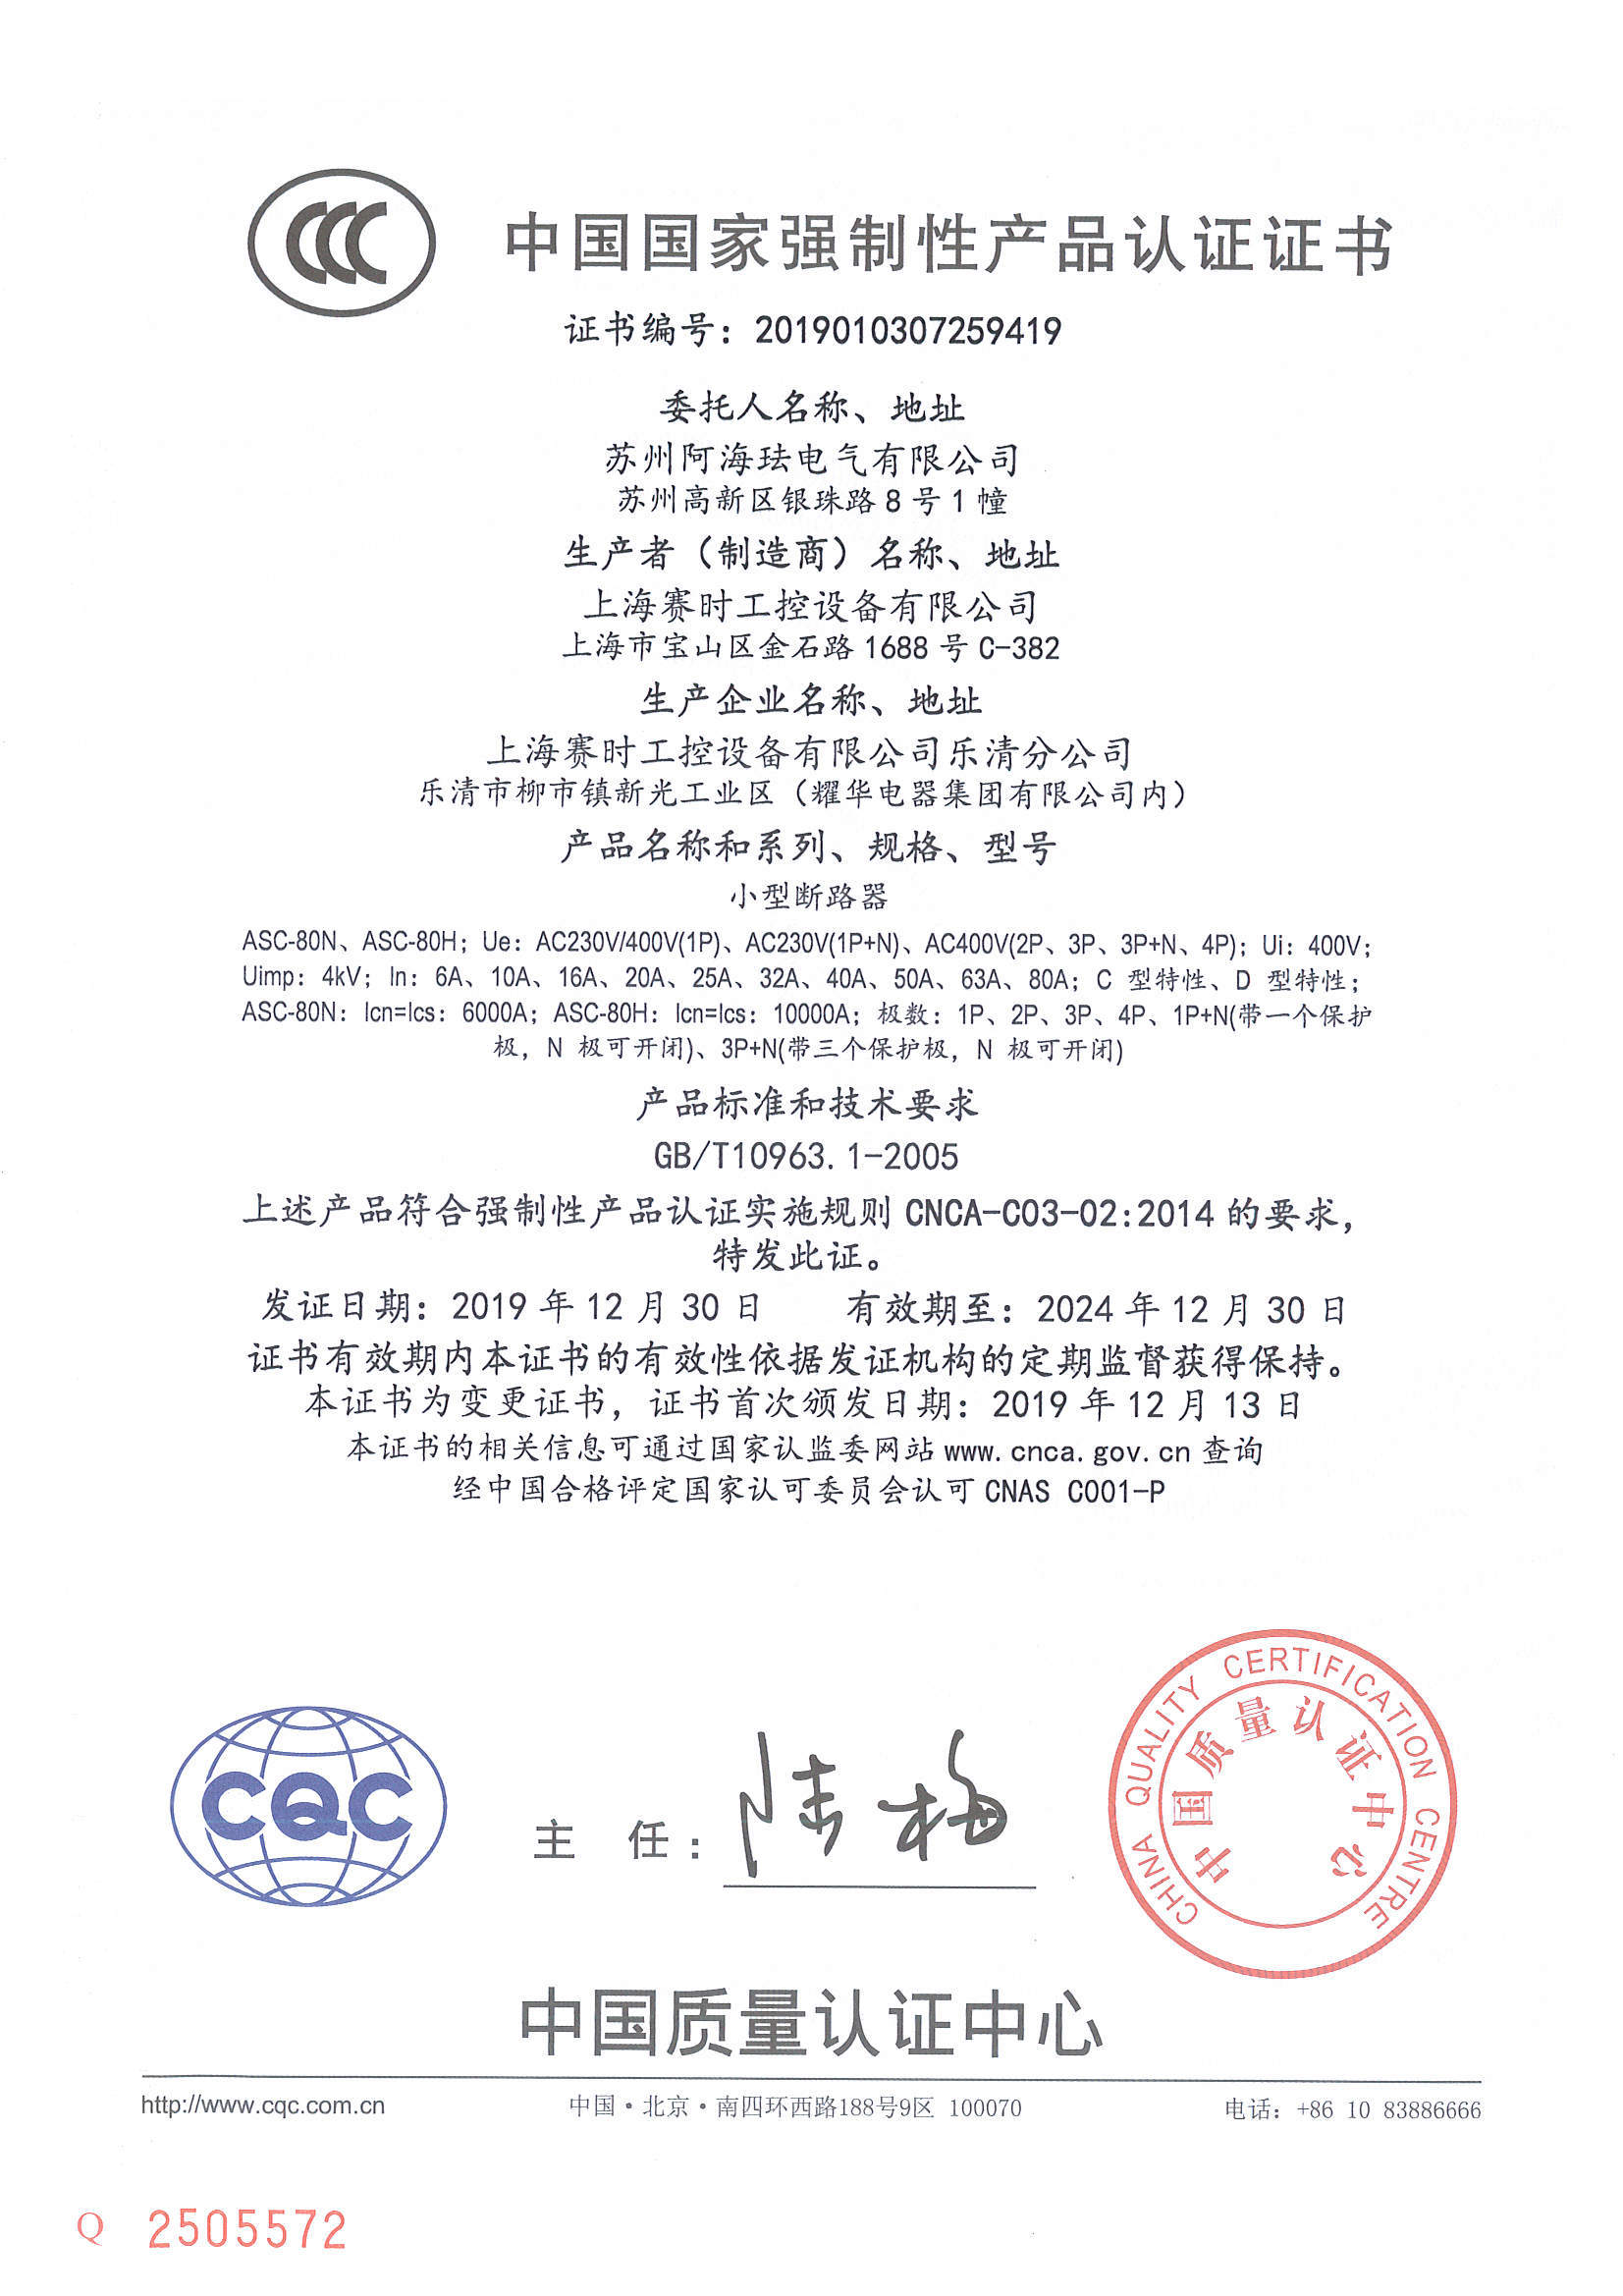 ASC-80 CCC Certificate